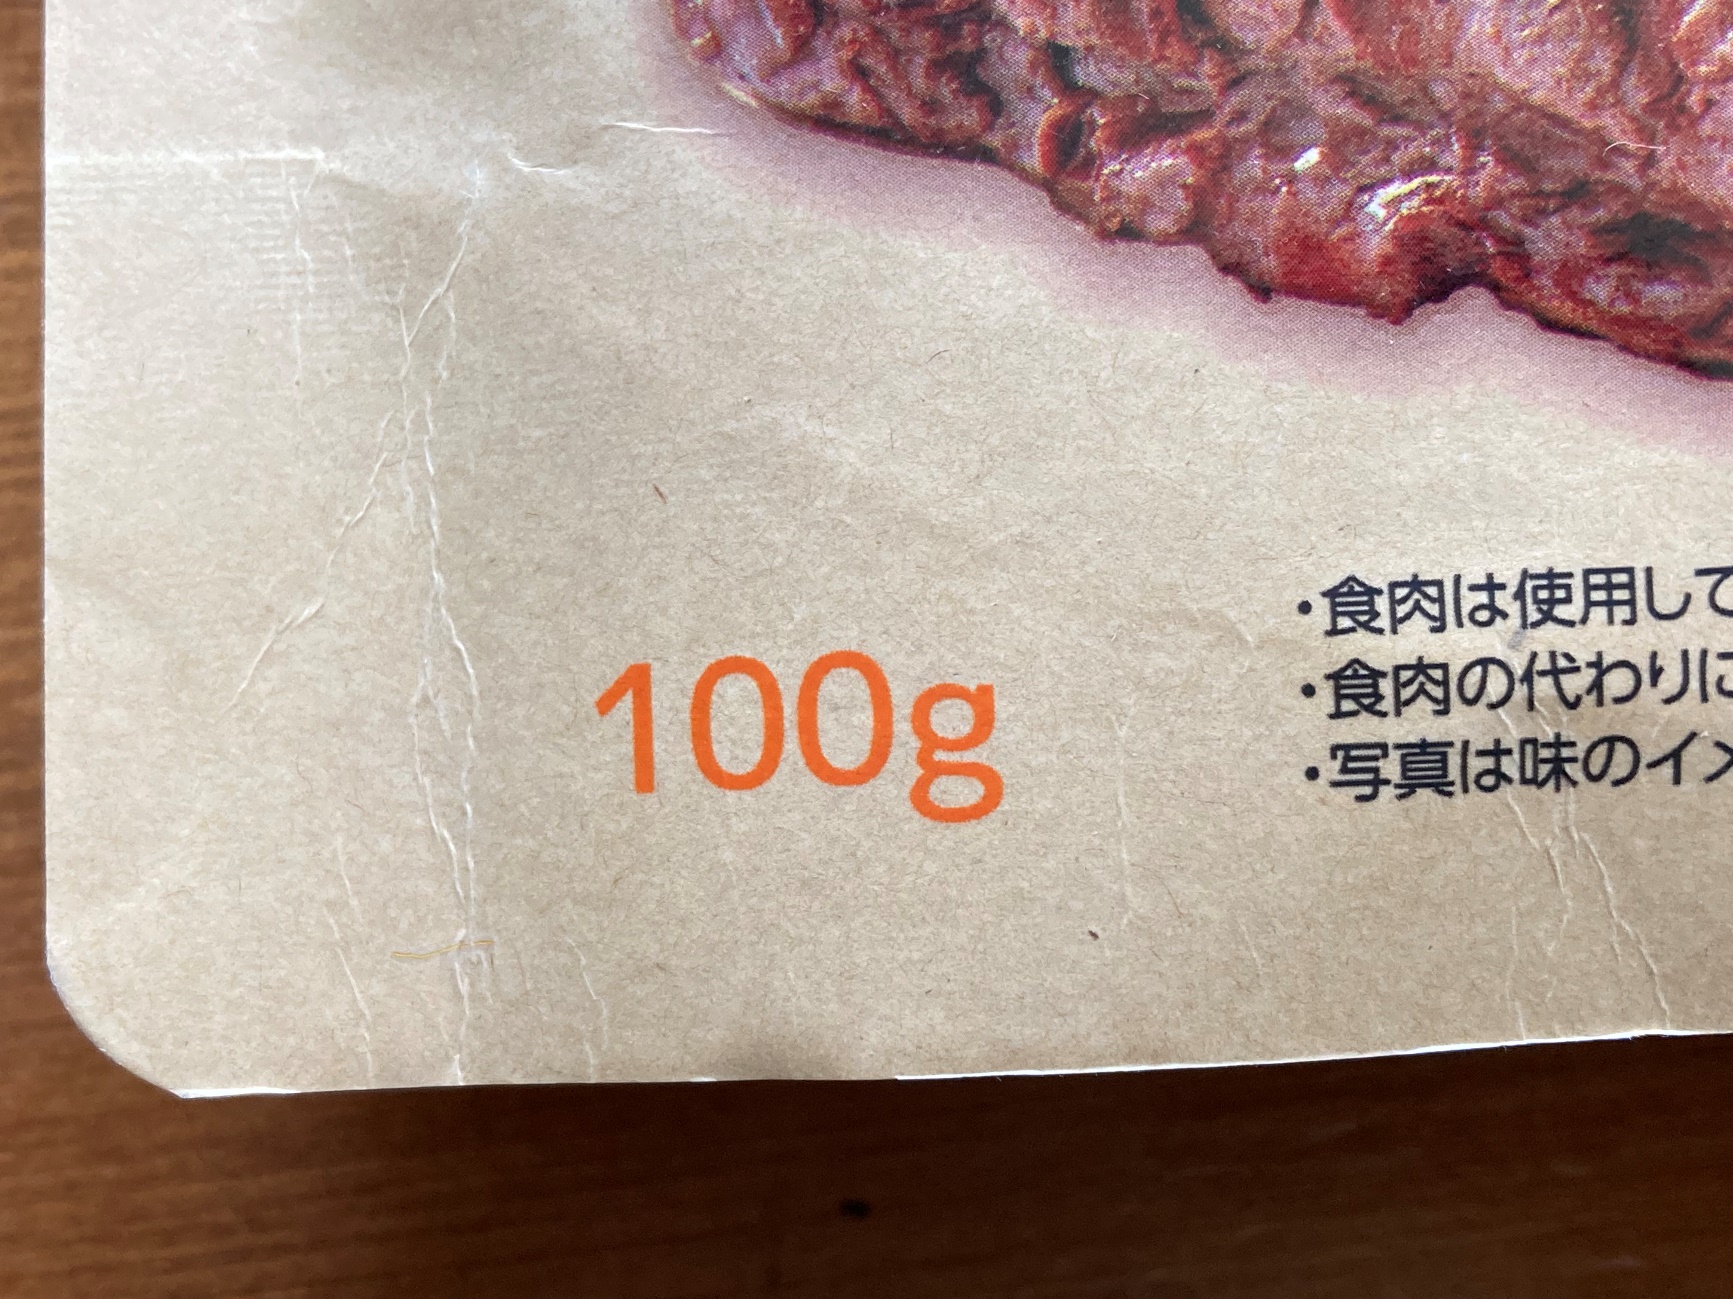 業務スーパーの味付きベジタリアンステーキBBQ味の内容量100gの表記